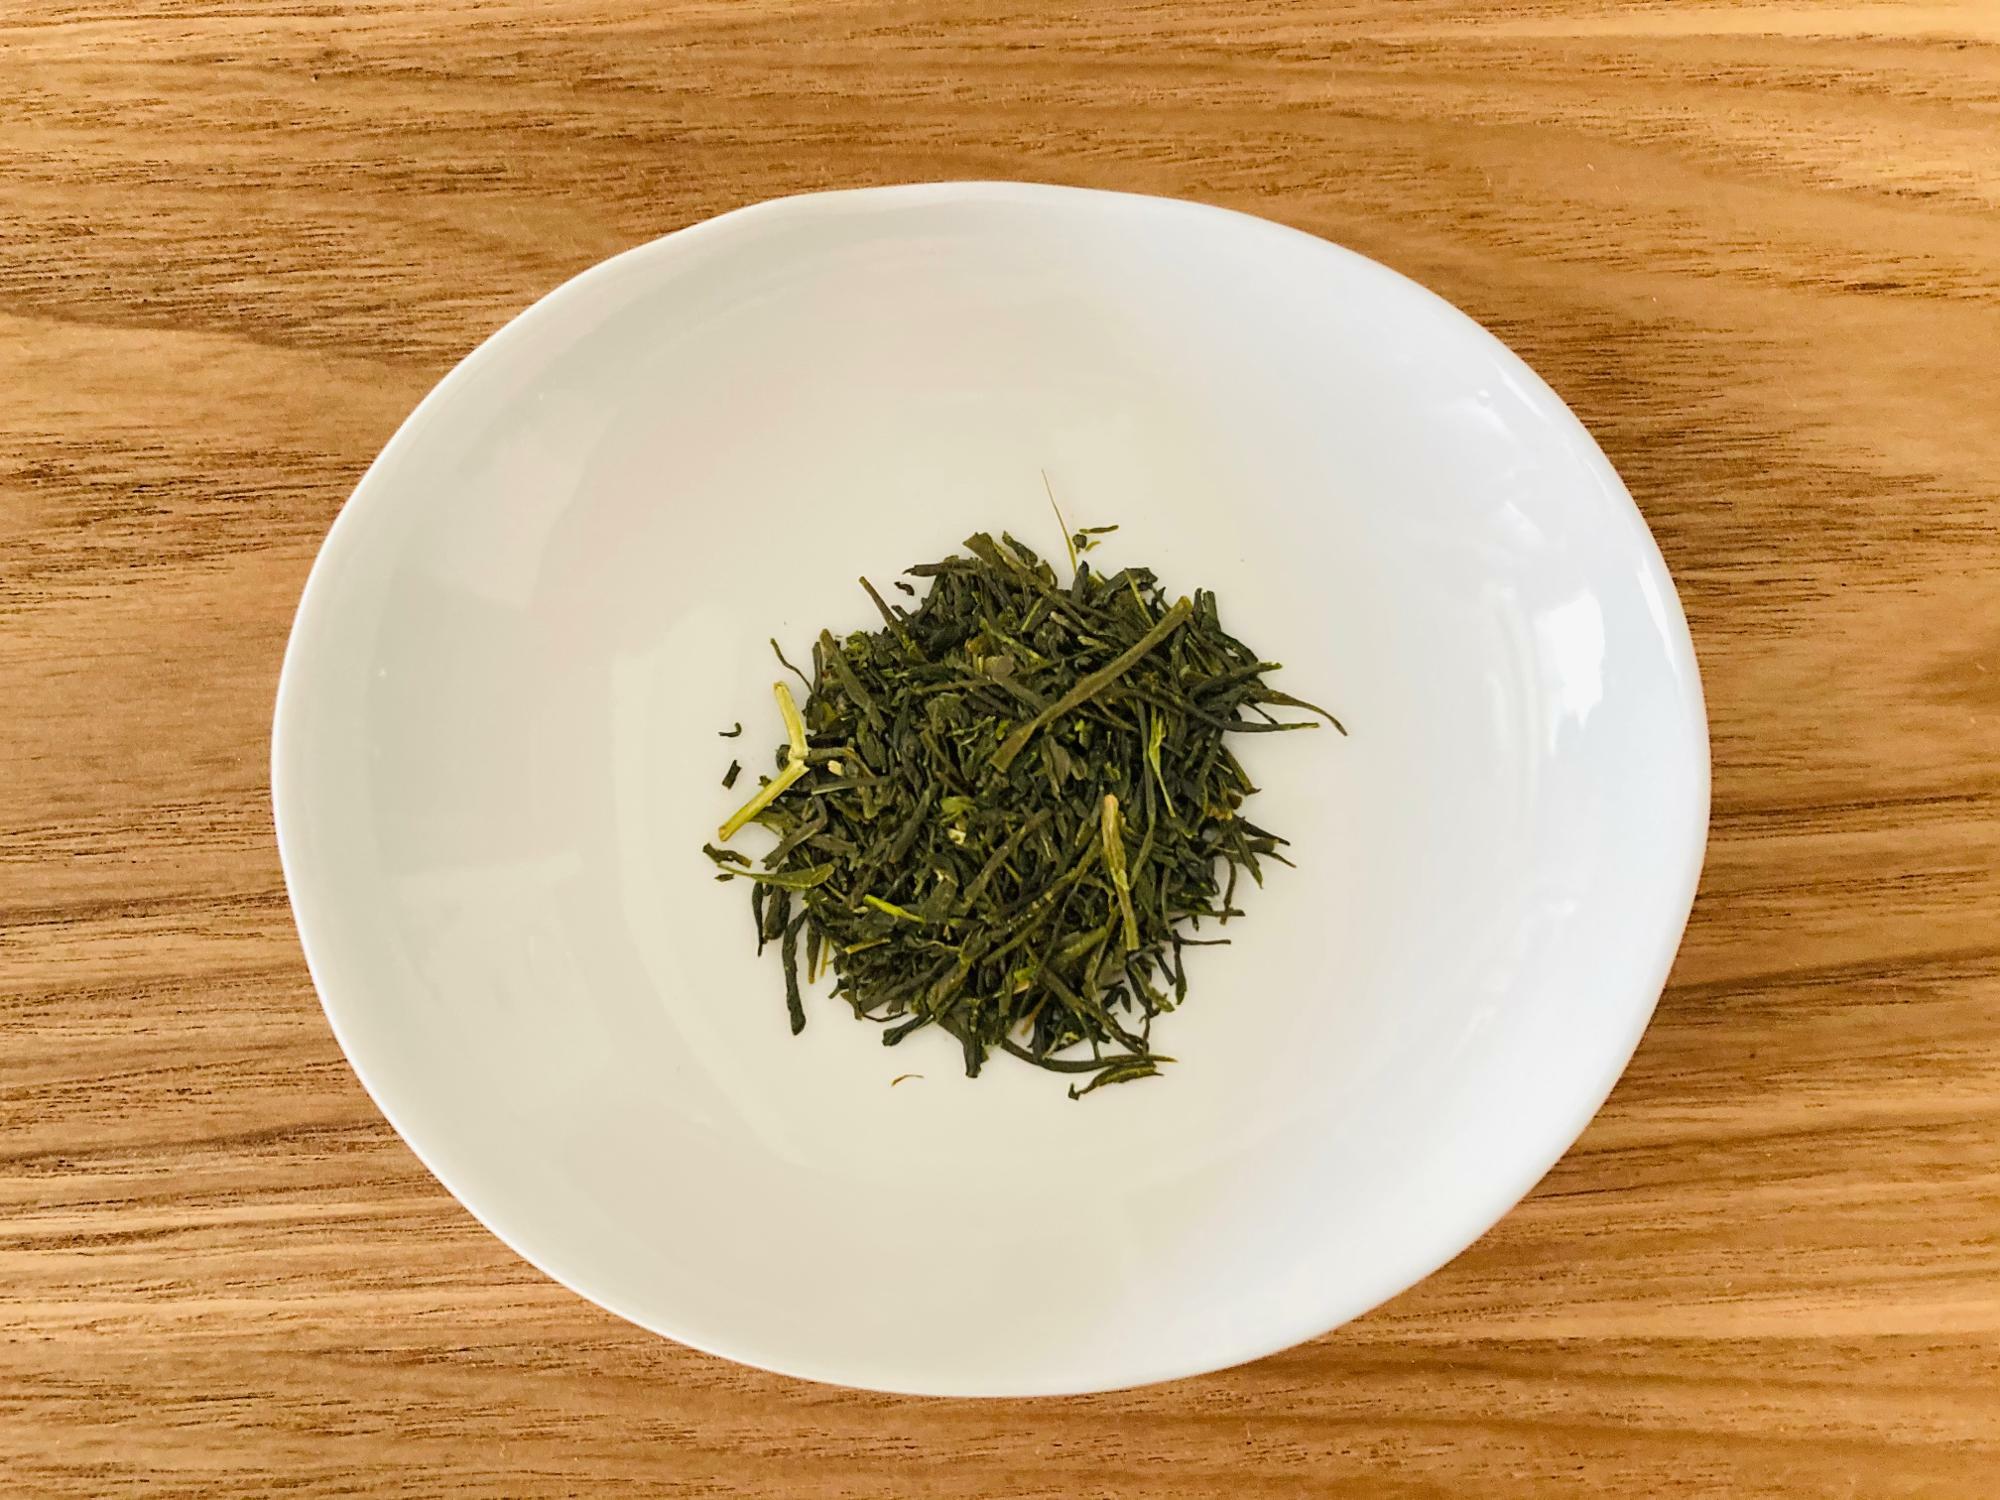 昔ながらの製法で作られた煎茶。粉っぽい部分は少なく茶葉が太くしっかりしている。茶液の色は黄色っぽく透明感がある。